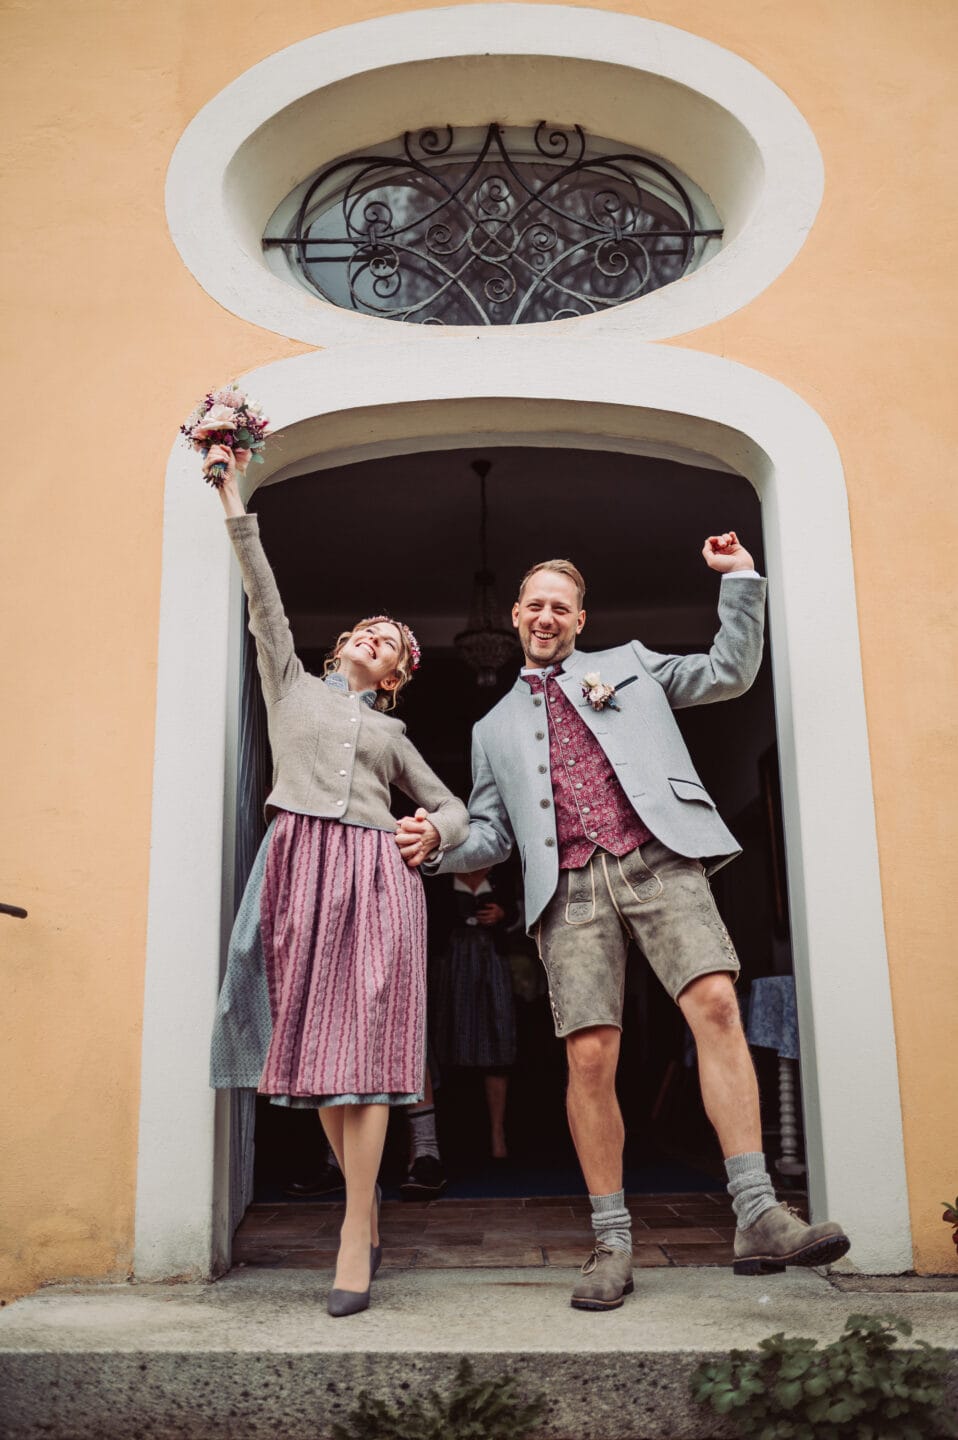 Das Brautpaar freut sich über die standesamtliche Trauung und hebt die Arme nach oben, als Zeichen der Freude am Ausgang des Schlosses in Aystetten.